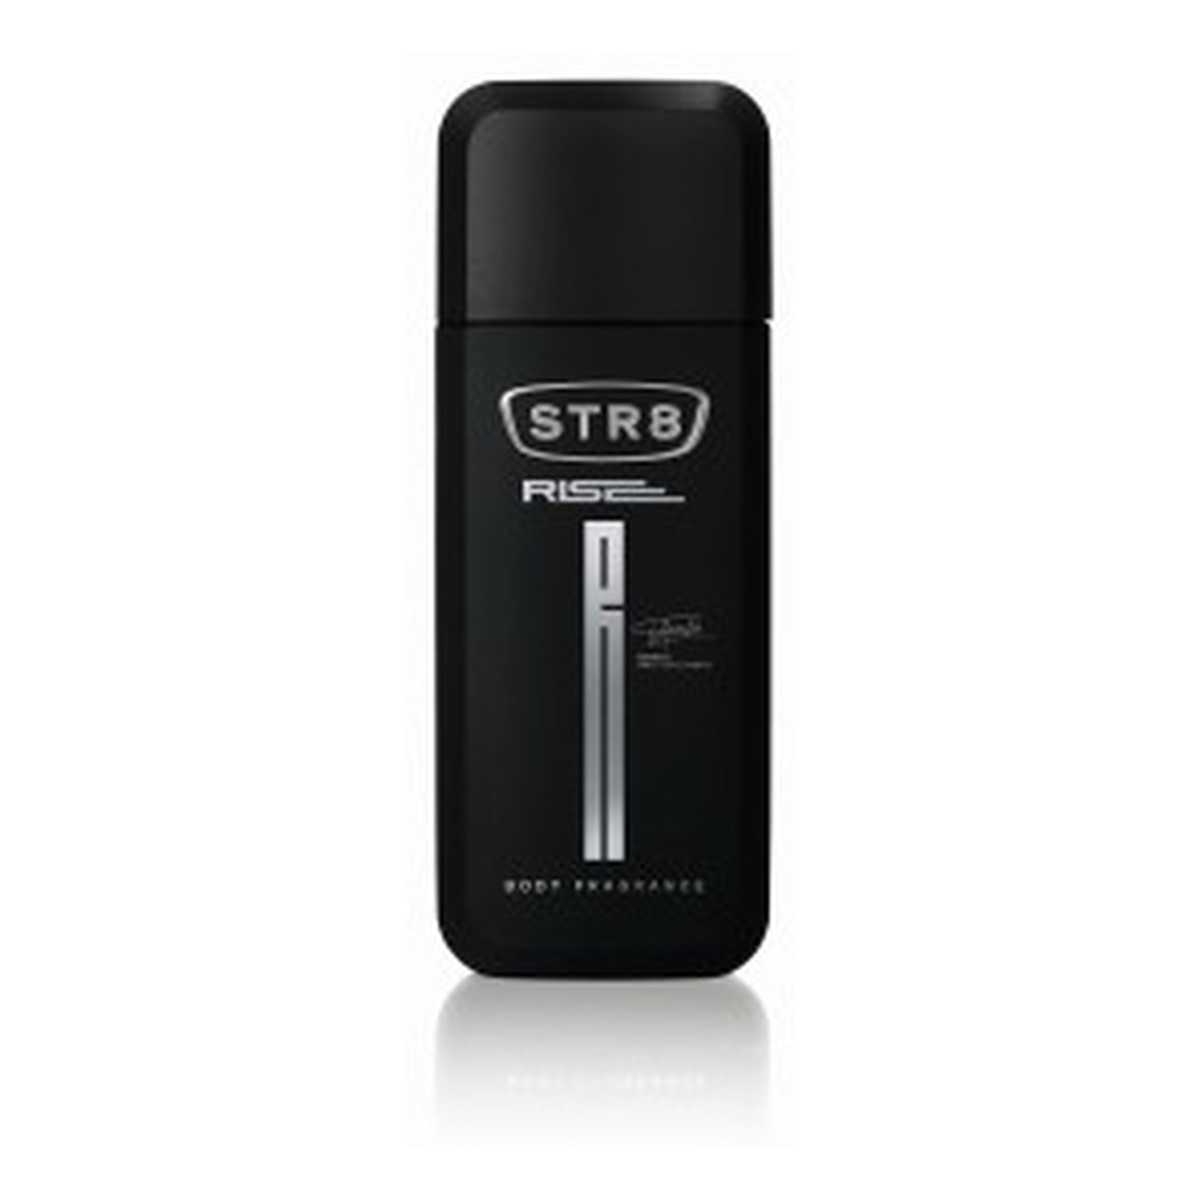 STR8 Rise Dezodorant spray 75ml